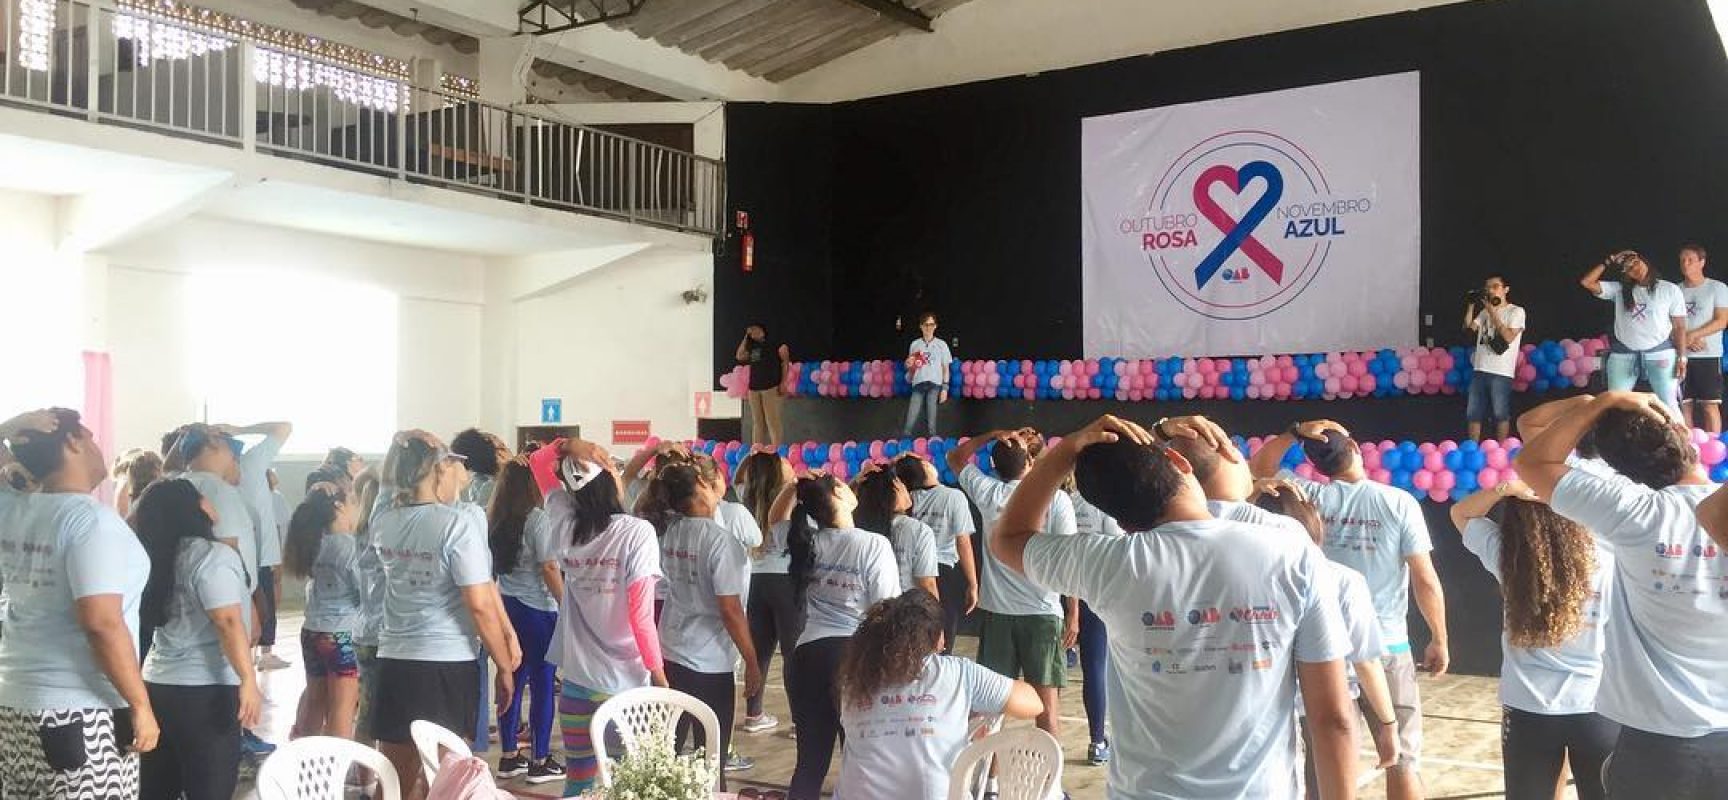 OAB e Prefeitura promovem ações de prevenção aos cânceres de mama e próstata em Ilhéus